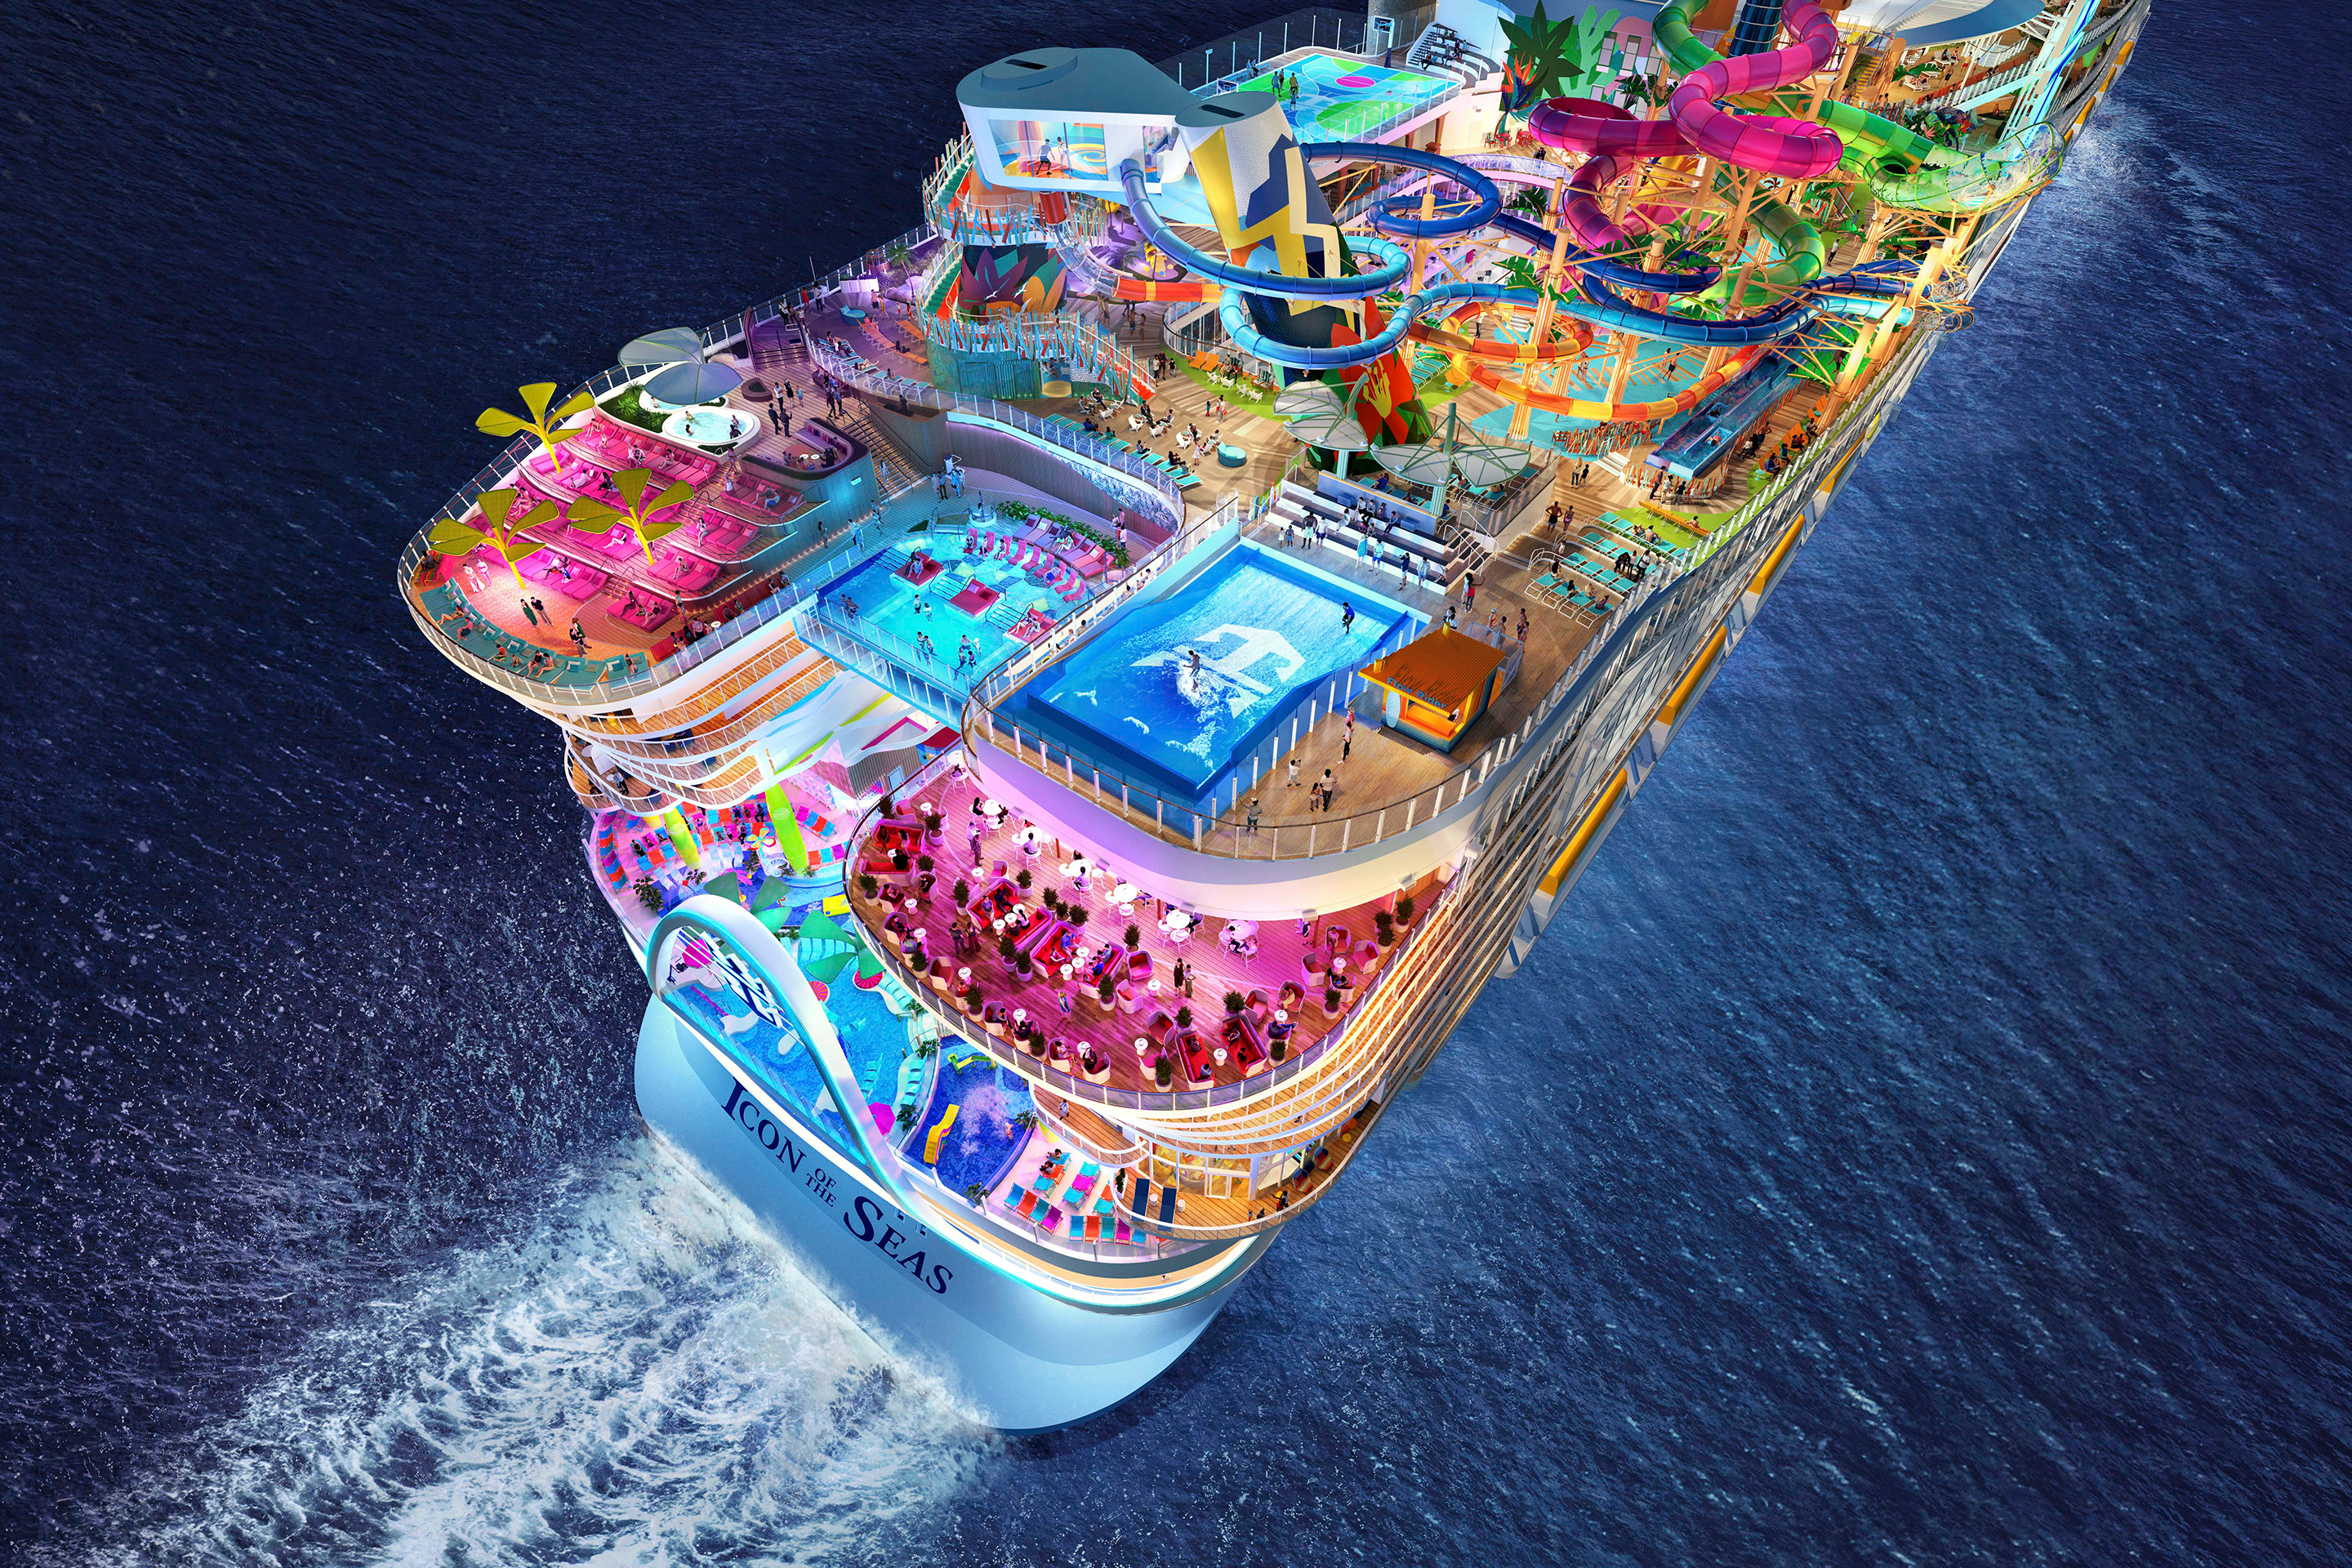 South America Luxury Cruise - Miami to Miami on Feb 24, 2025